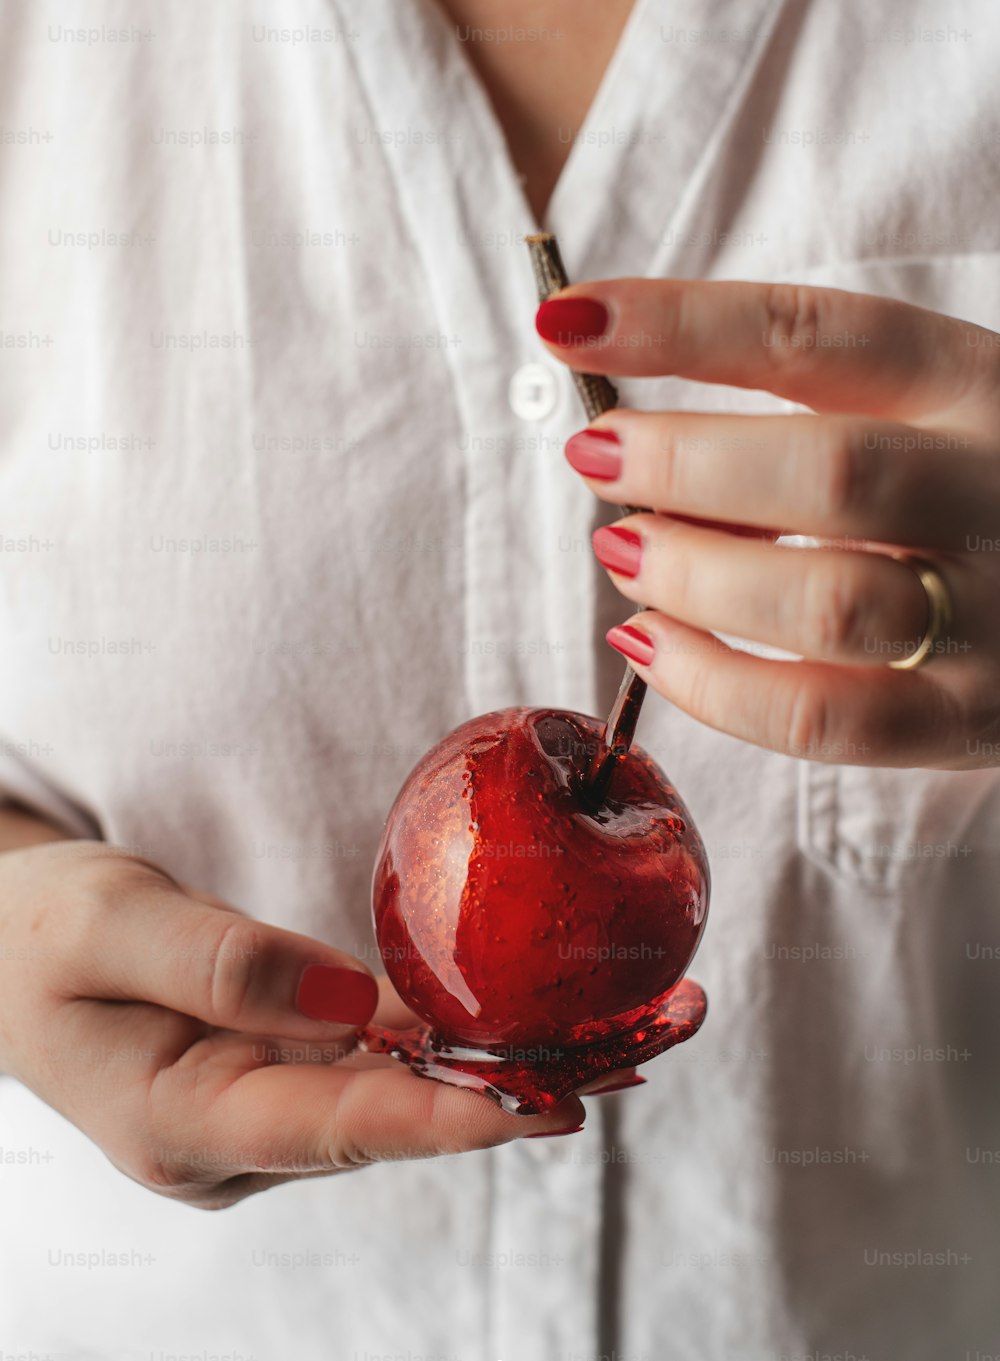 eine Frau hält einen Apfel in der Hand, aus dem ein Bissen genommen wurde